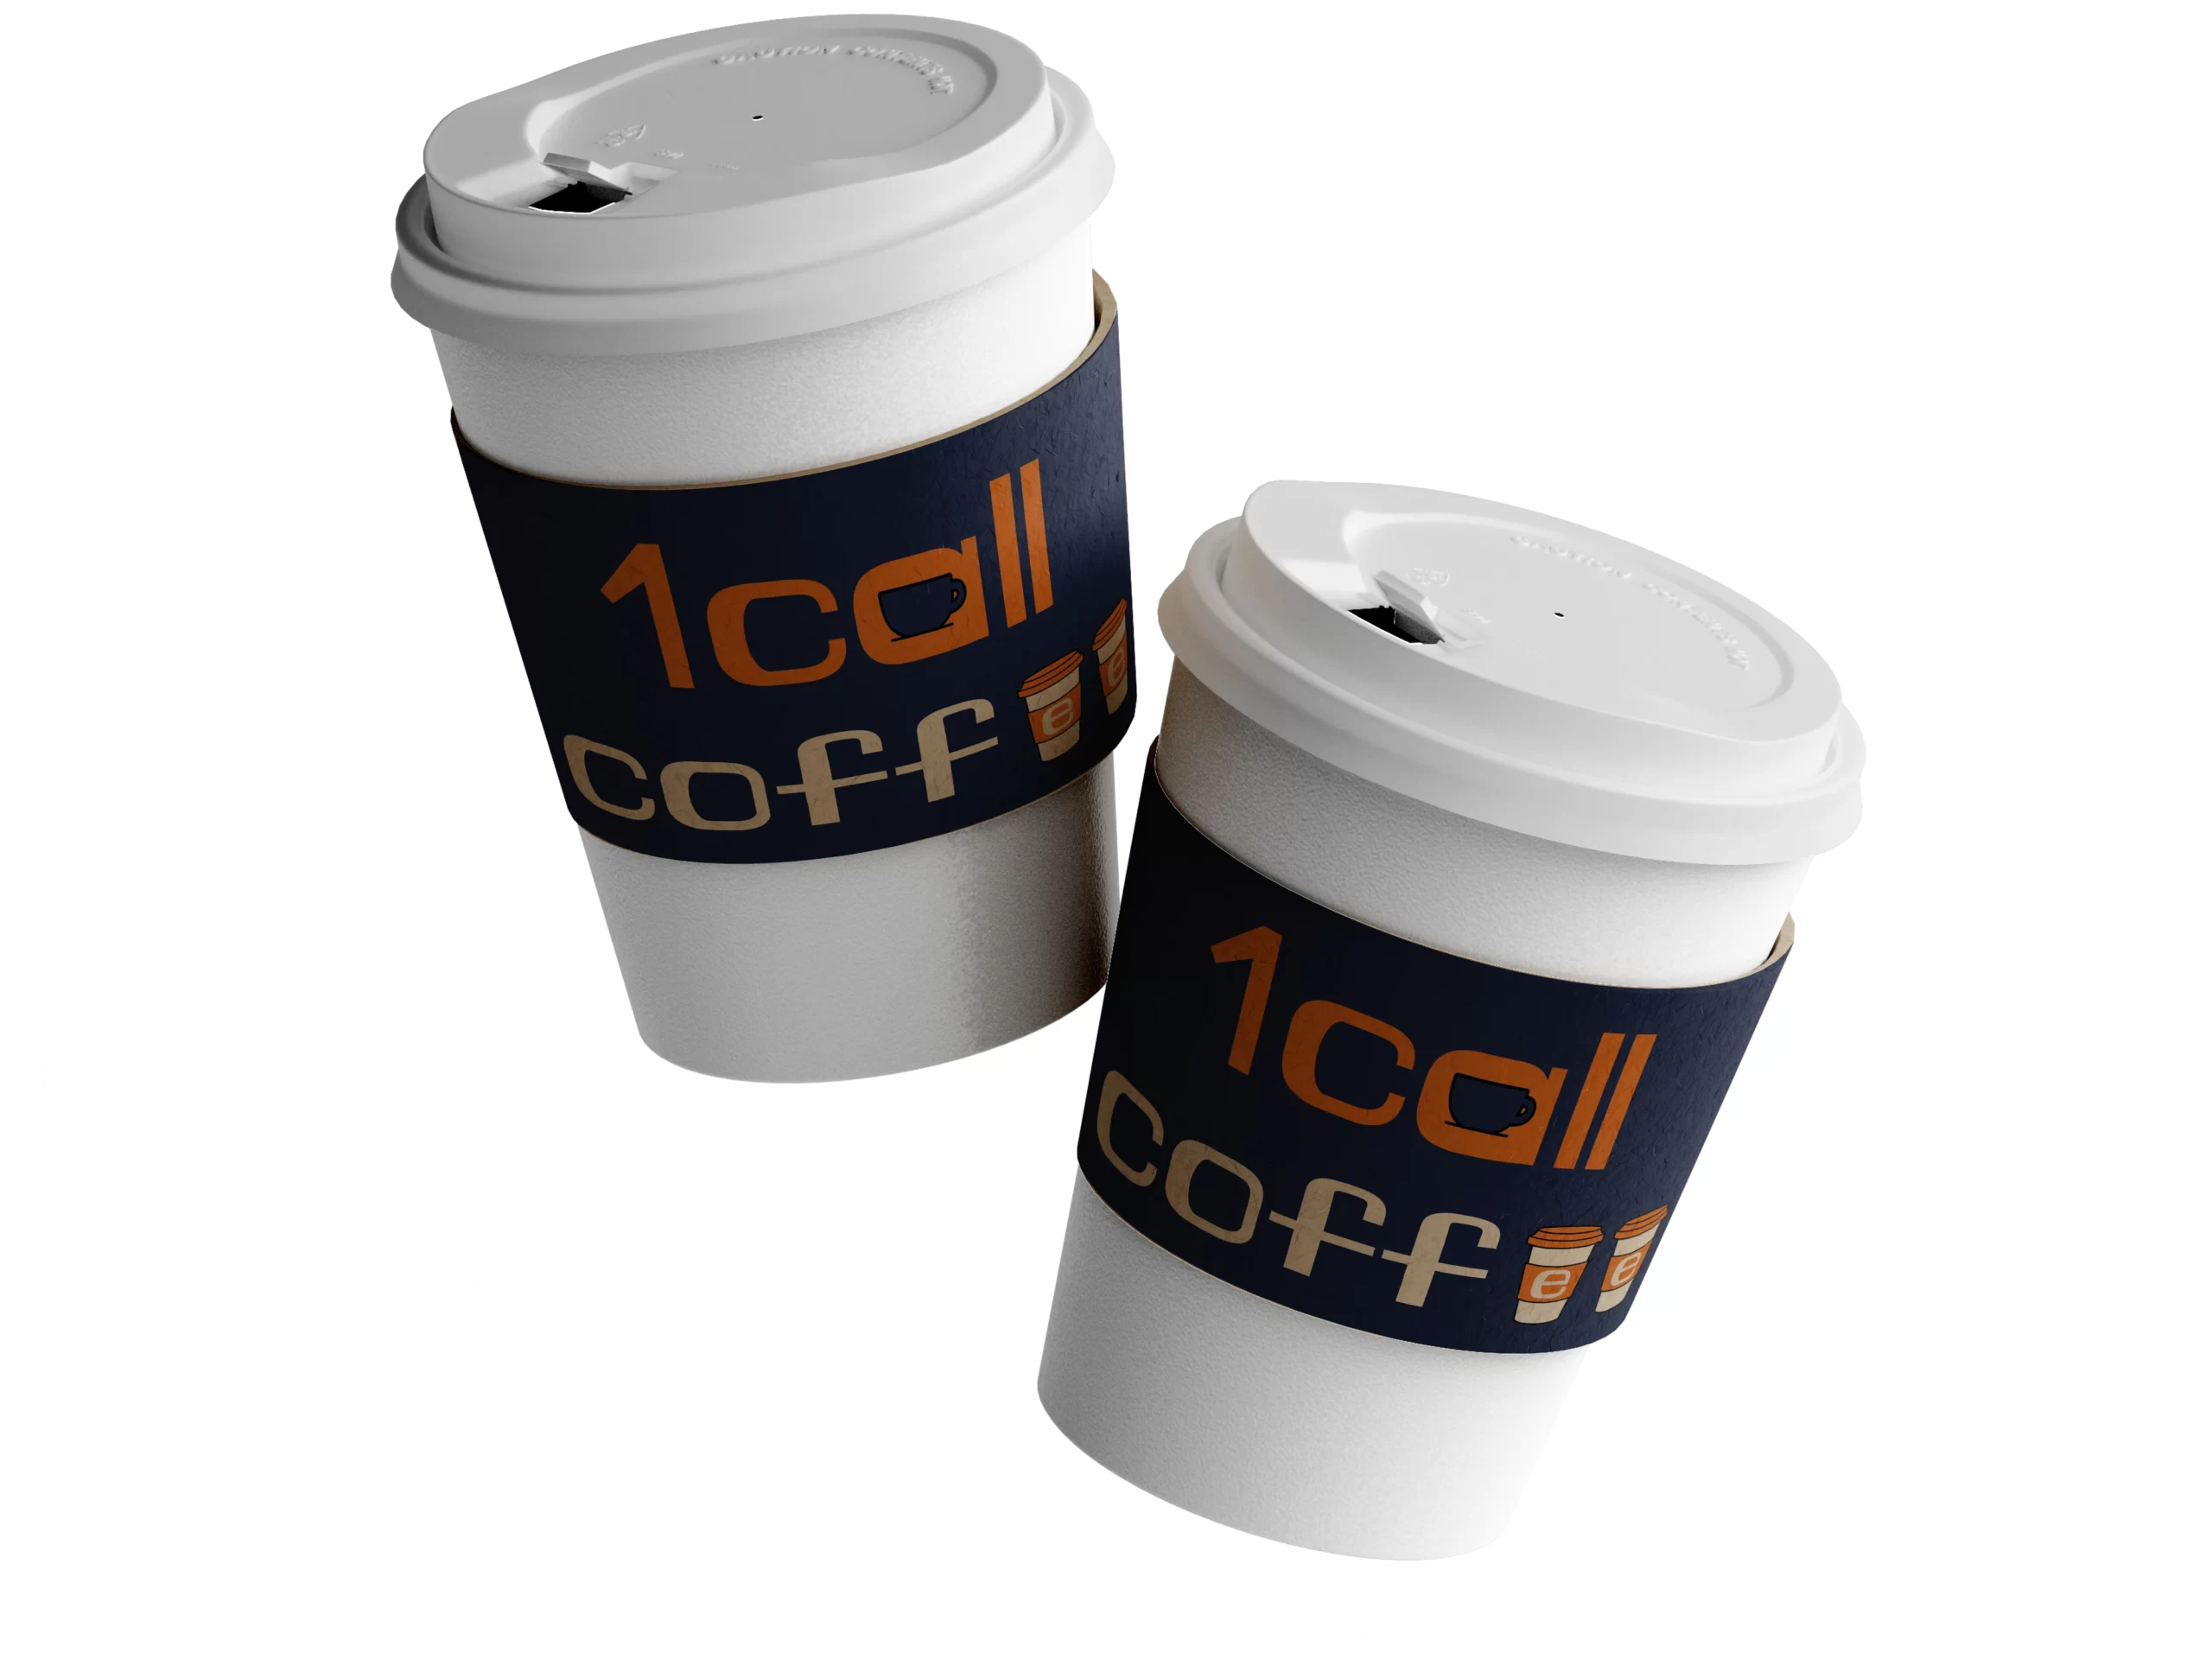 1Call Coffee Cups